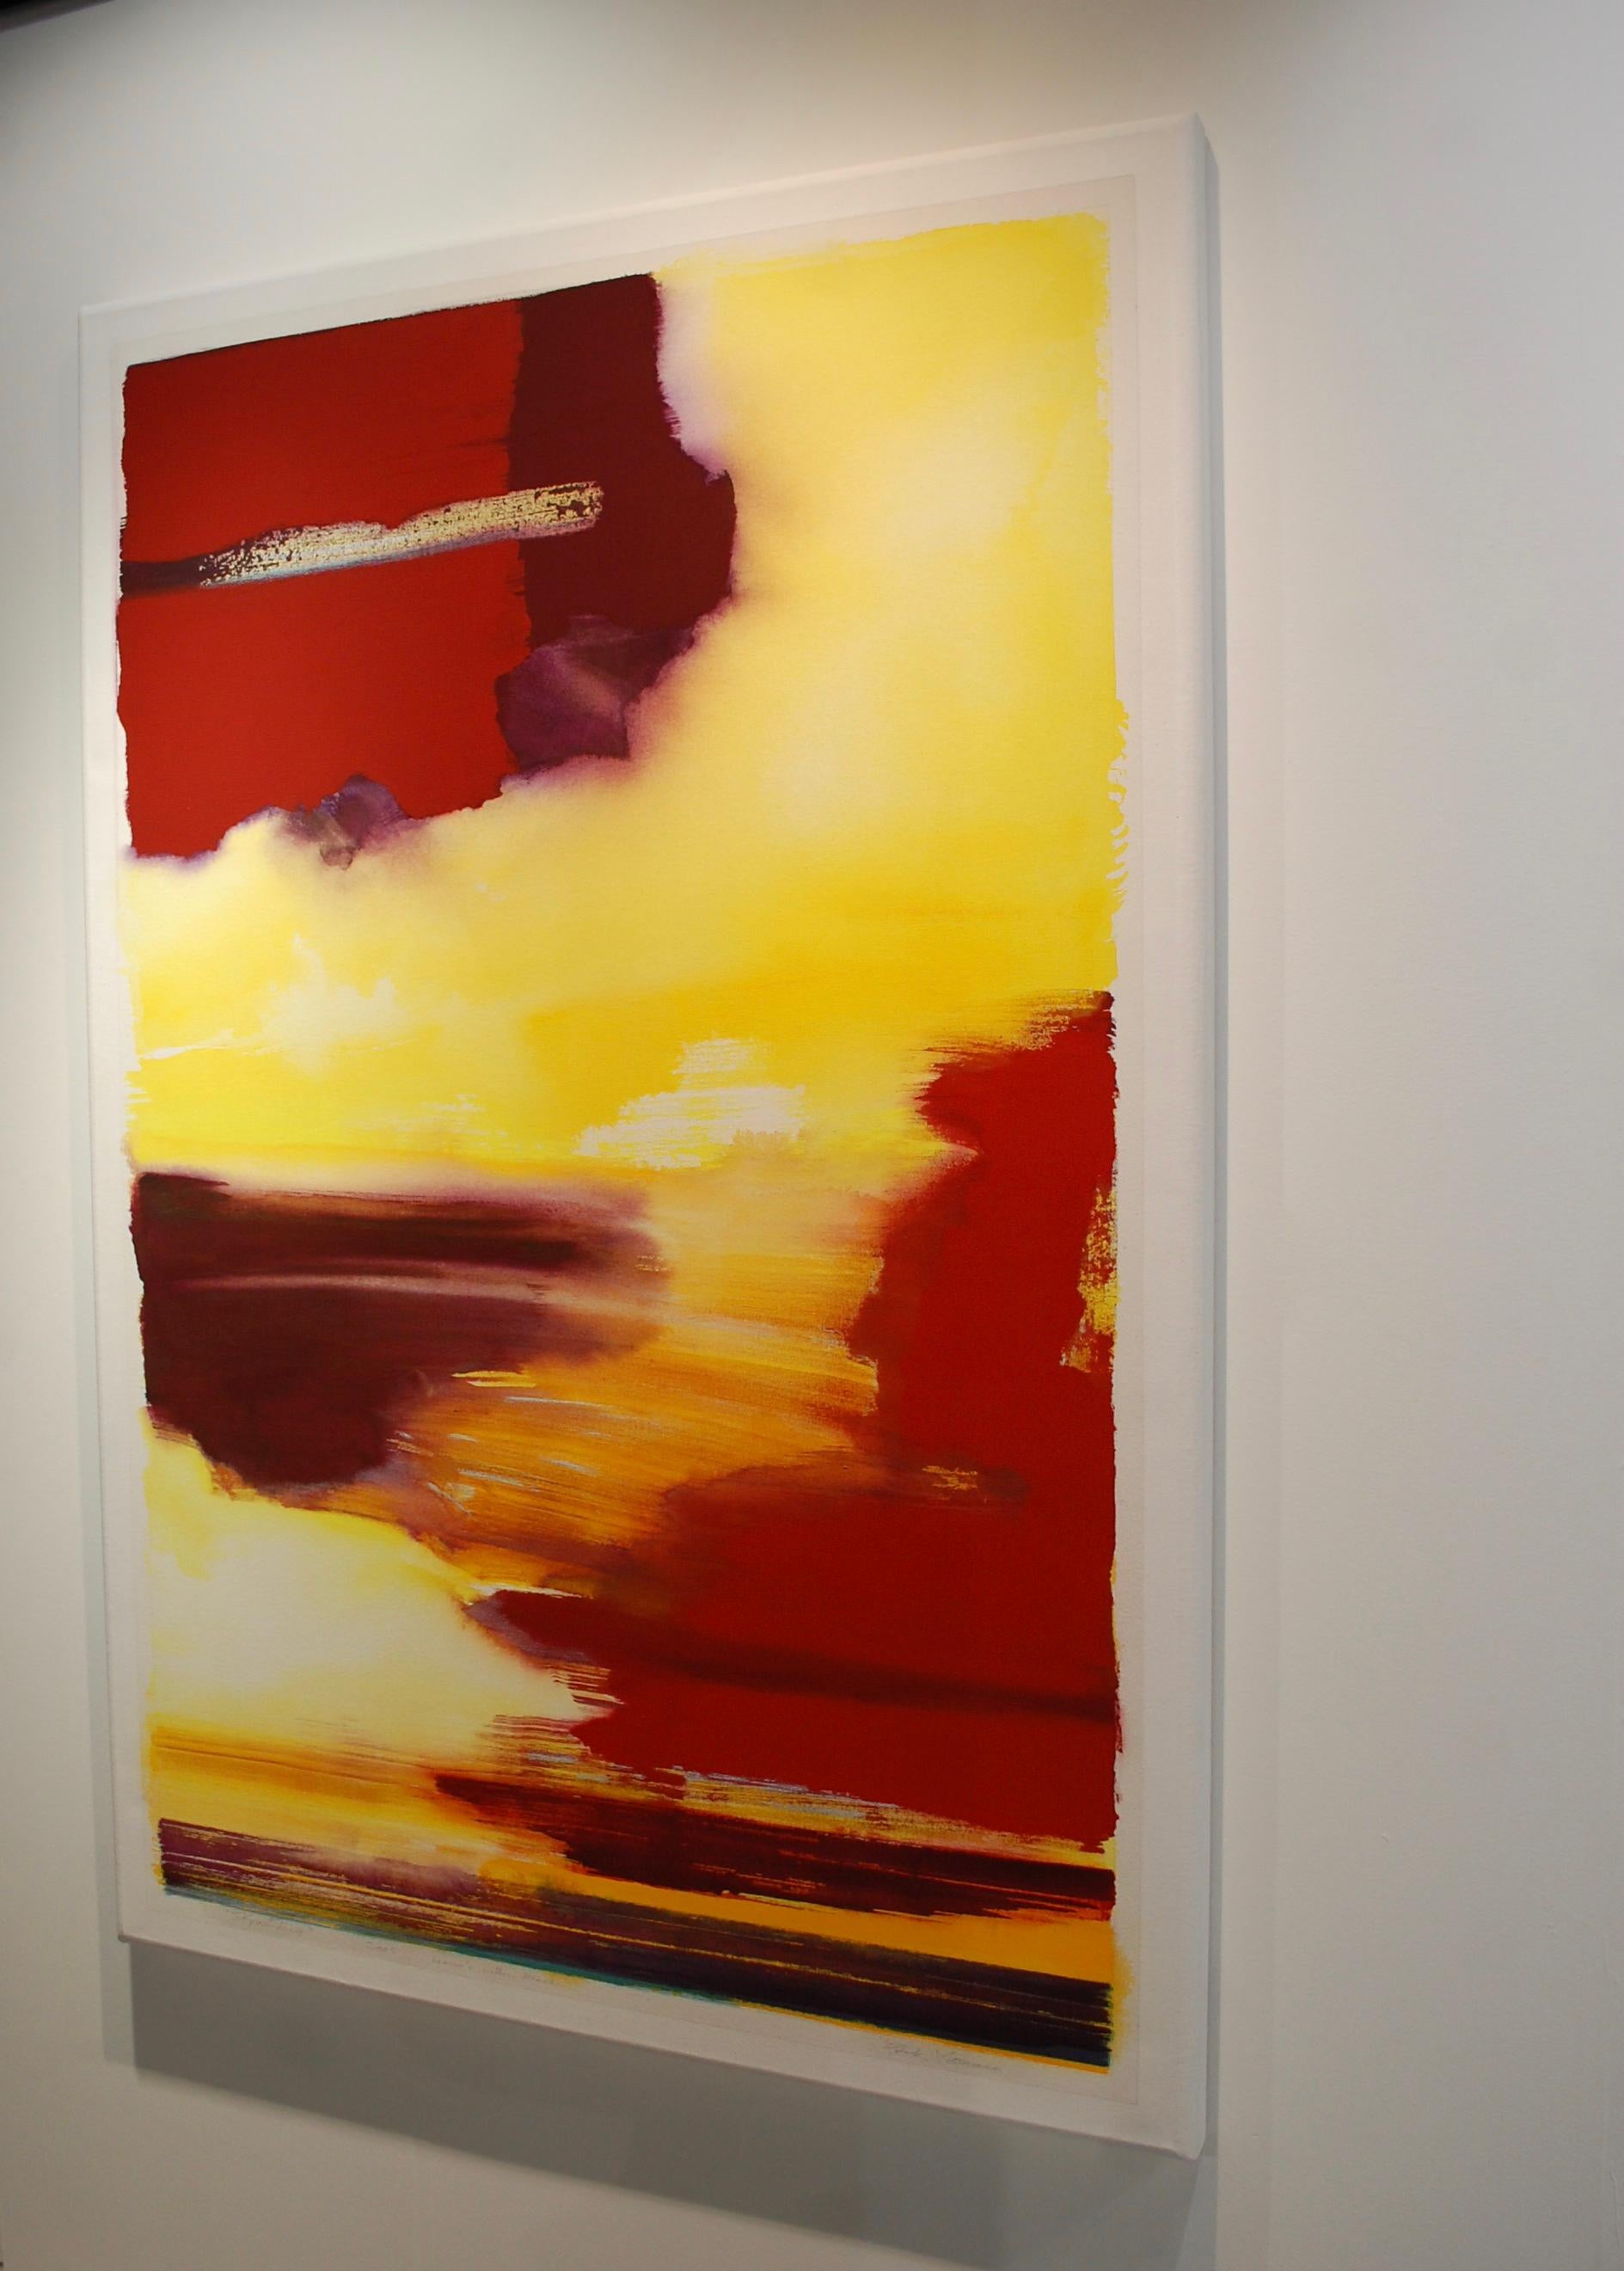 Vue sur le coucher de soleil Grande peinture abstraite jaune rouge - Painting de Frank Monaco